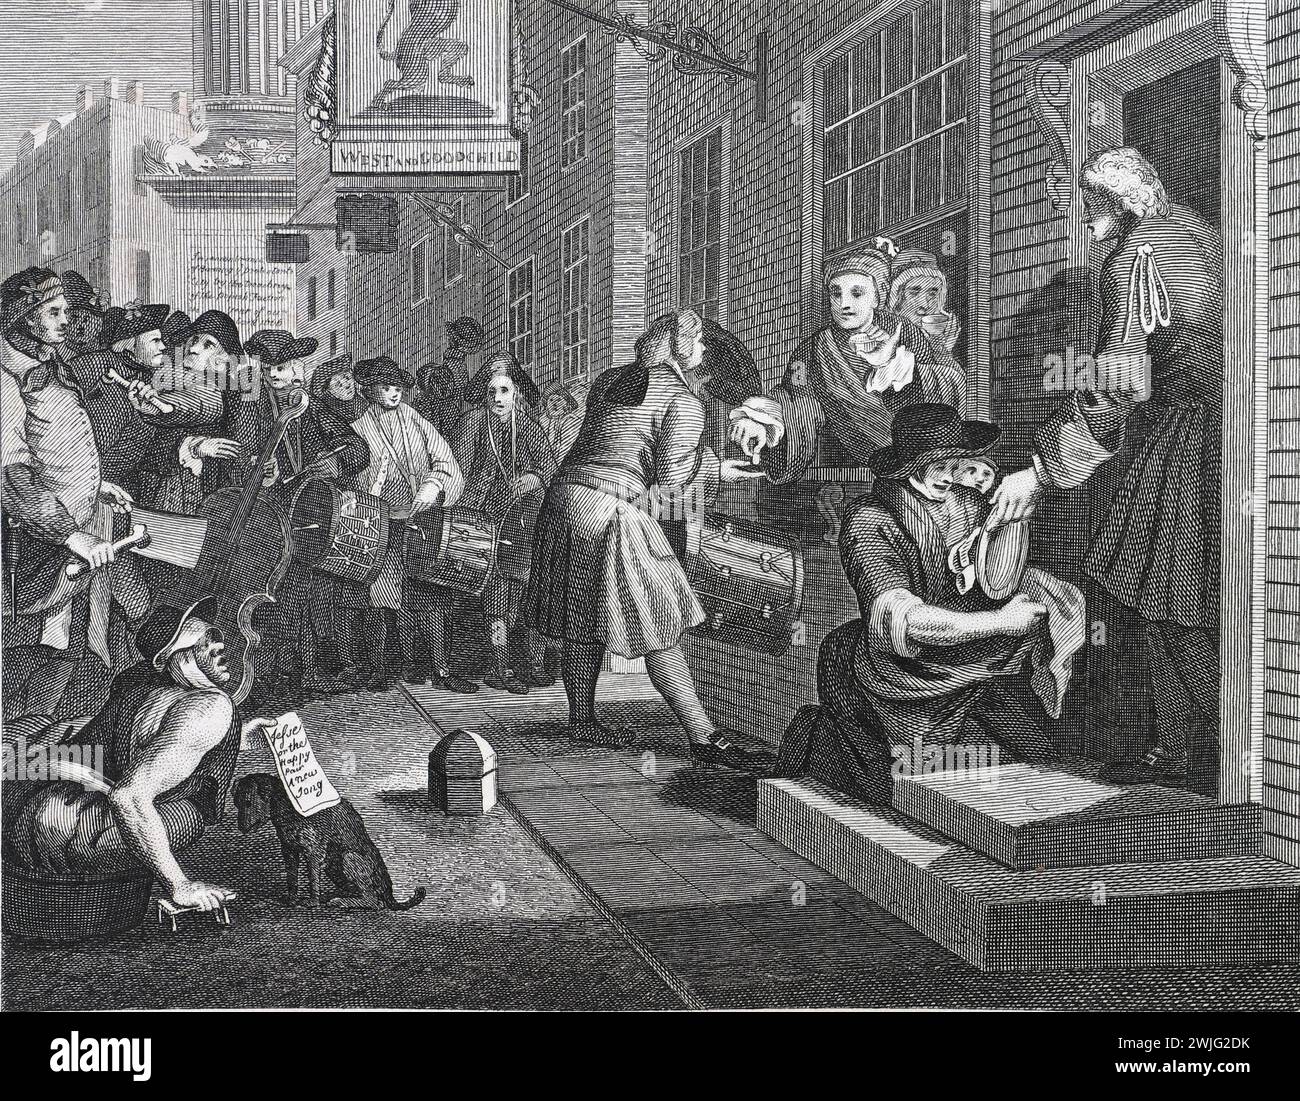 Illustrazione in bianco e nero: "L'industrioso "Prentice fuori dal suo tempo, e sposato con la figlia del suo Maestro". Incisione su William Hogarth (1697 - 1764) dalla sua serie, "industria e pigrizia". La sua prima serie di opere dipinte, "The Harlot's Progress" e "Marriage à-la-mode", che furono successivamente pubblicate come incisioni, "Industry and idleness", fu incisa fin dall'inizio. L'obiettivo di Hogarth in questa serie era quello di illustrare le possibili ricompense per il lavoro duro, e le insidie di non farlo, un messaggio prevalentemente rivolto ai bambini che lavorano. Questa riproduzione è stata di Thomas Cook. Foto Stock